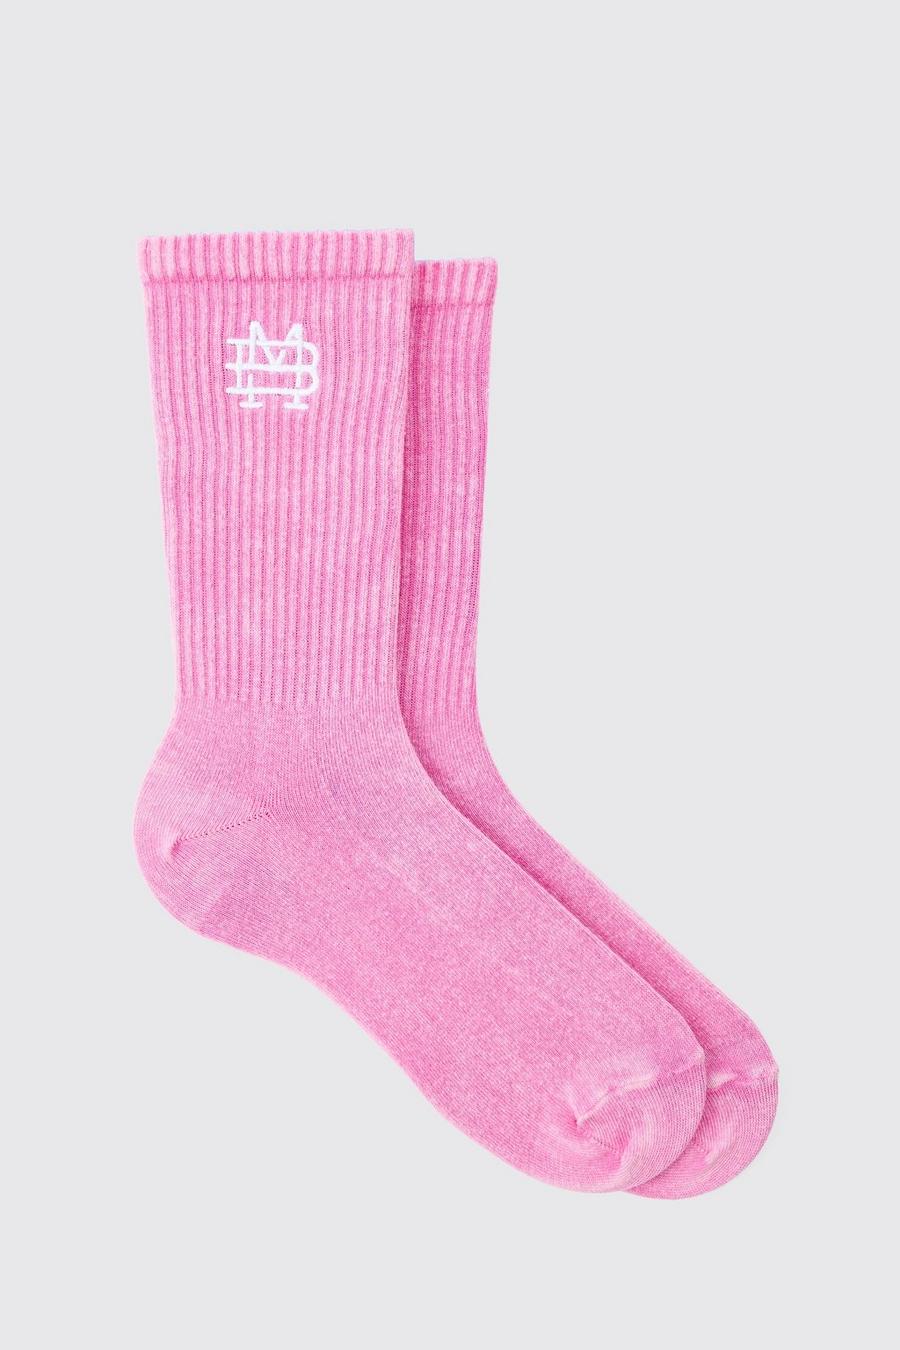 Acid Wash BM Embroidered Socks In Pink image number 1